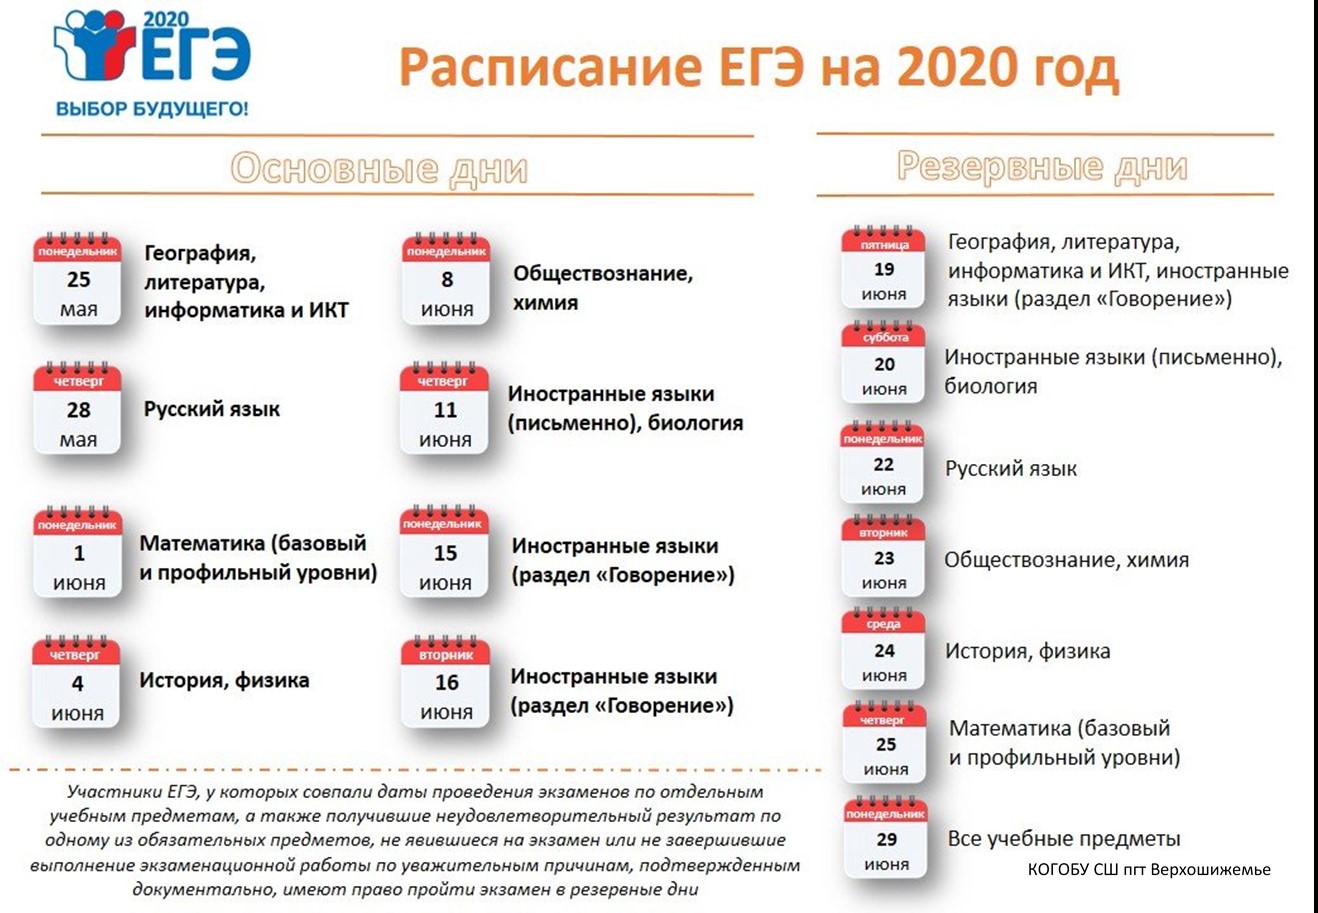 На информационная какие экзамены. ЕГЭ 2020 даты проведения. Сроки проведения единого государственного экзамена в 2020 году. ЕГЭ 2020 расписание экзаменов. Резервные даты ЕГЭ 2020.